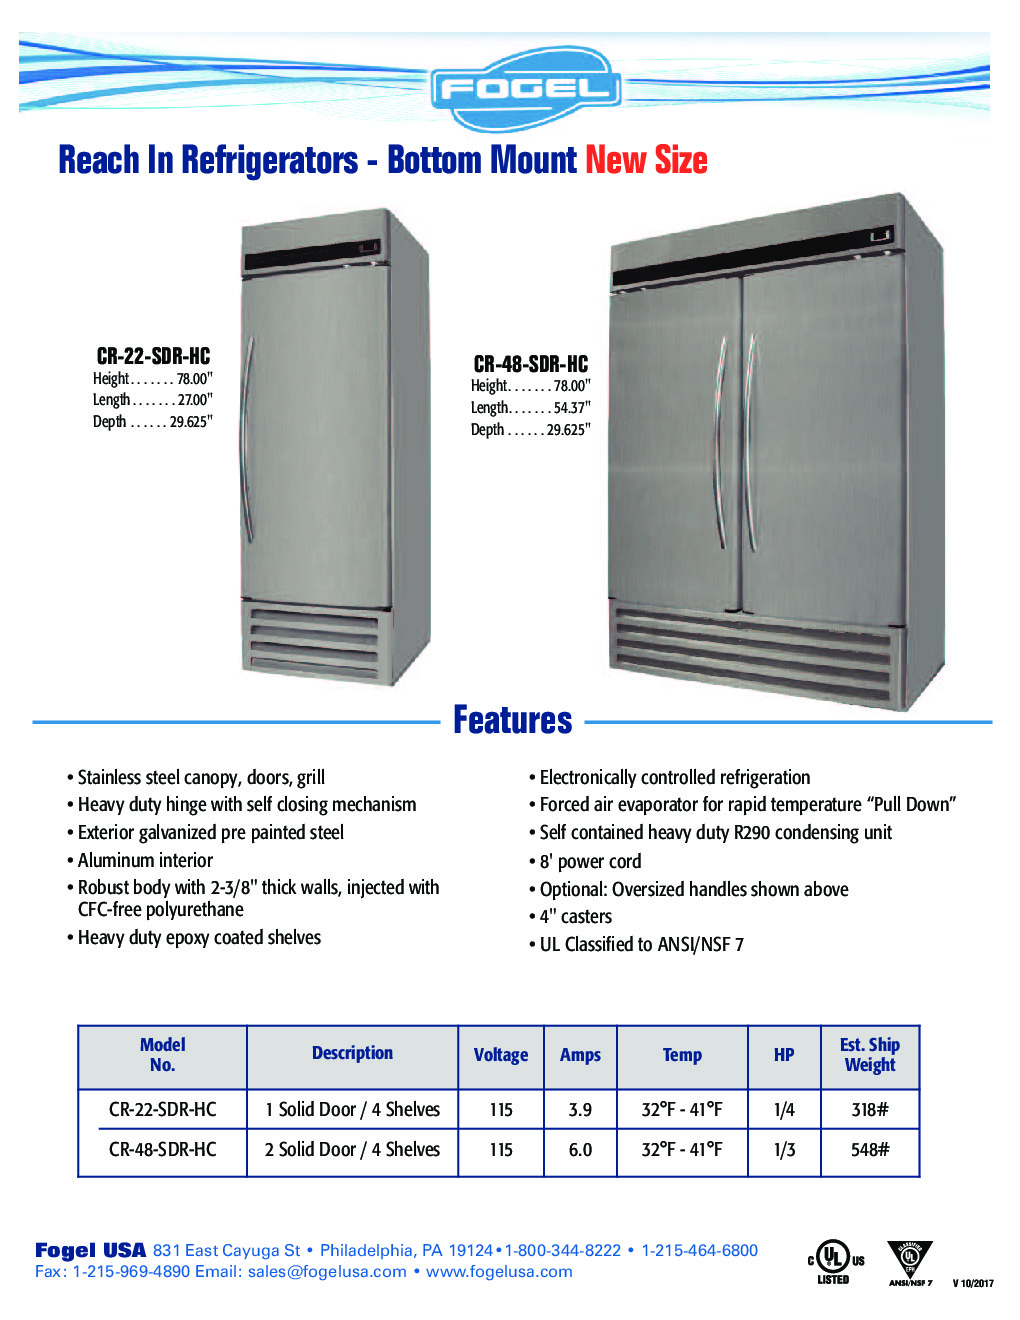 Fogel USA CR-22-SDR-HC Reach-In Refrigerator